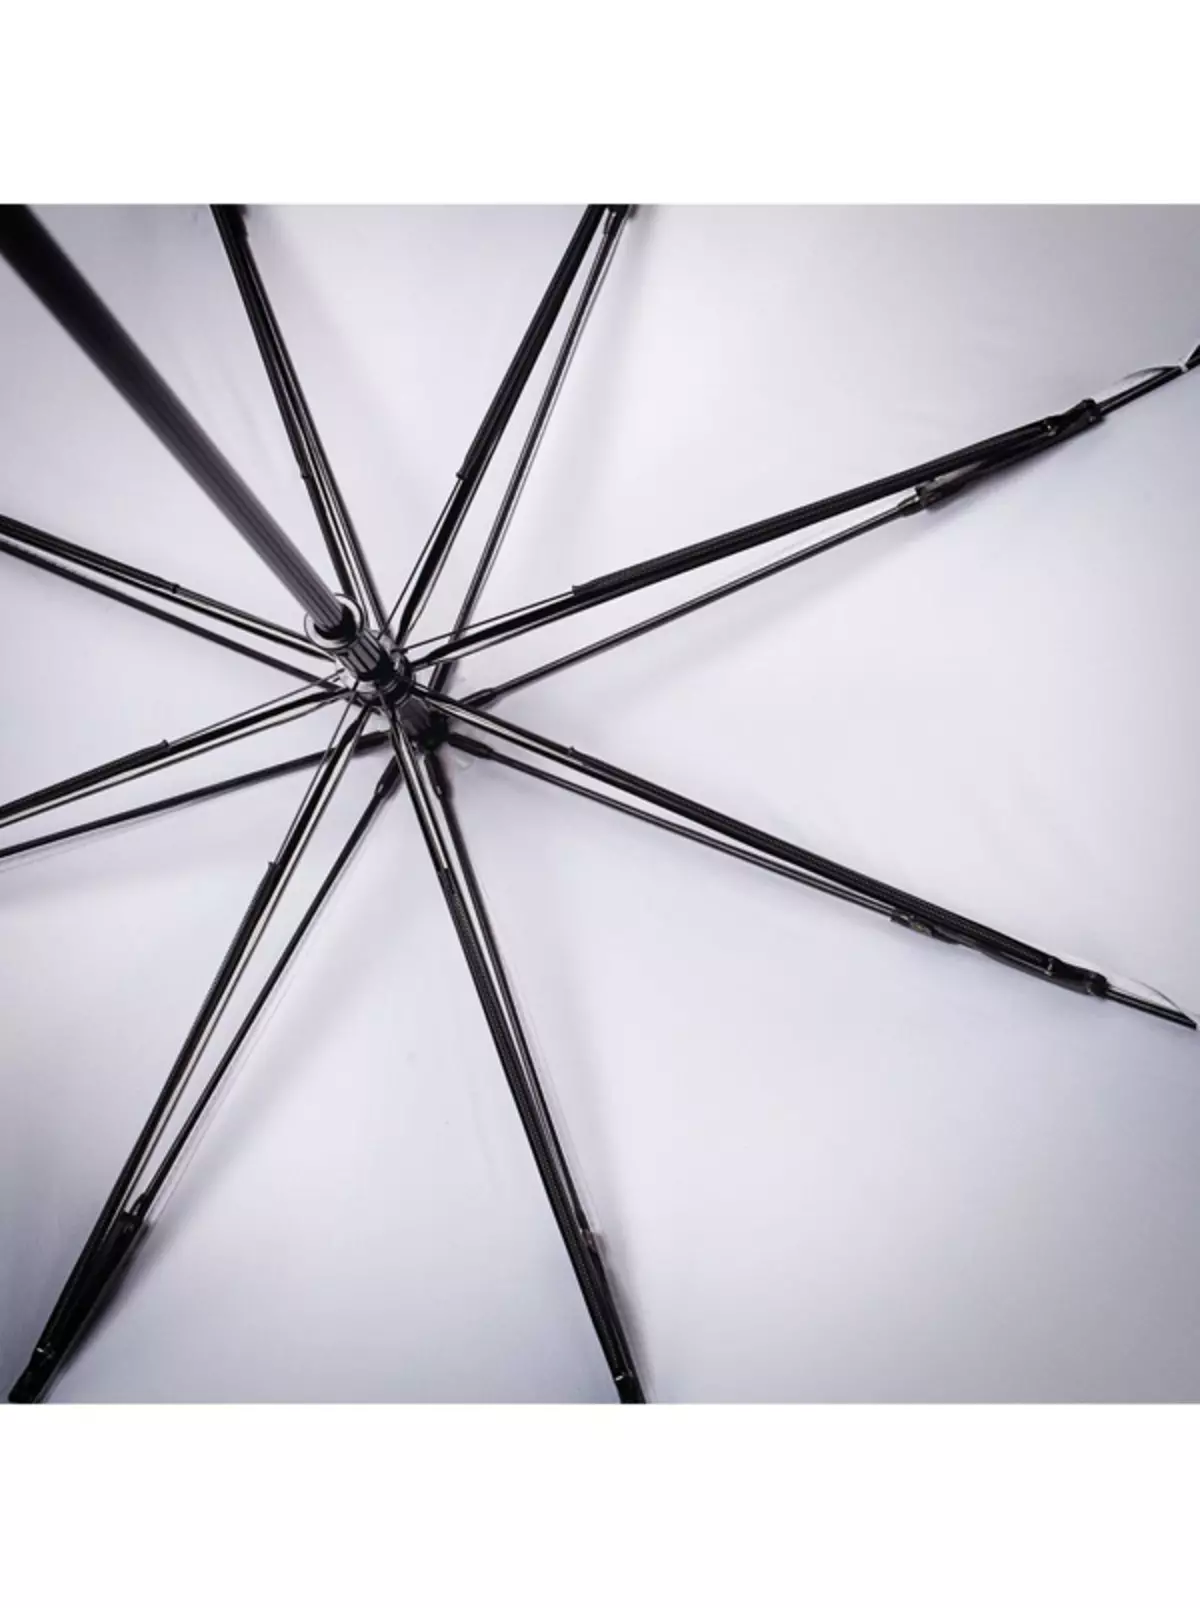 Malamalama umbrellas (74 ata): Tamaitai faataitaiga 15234_50